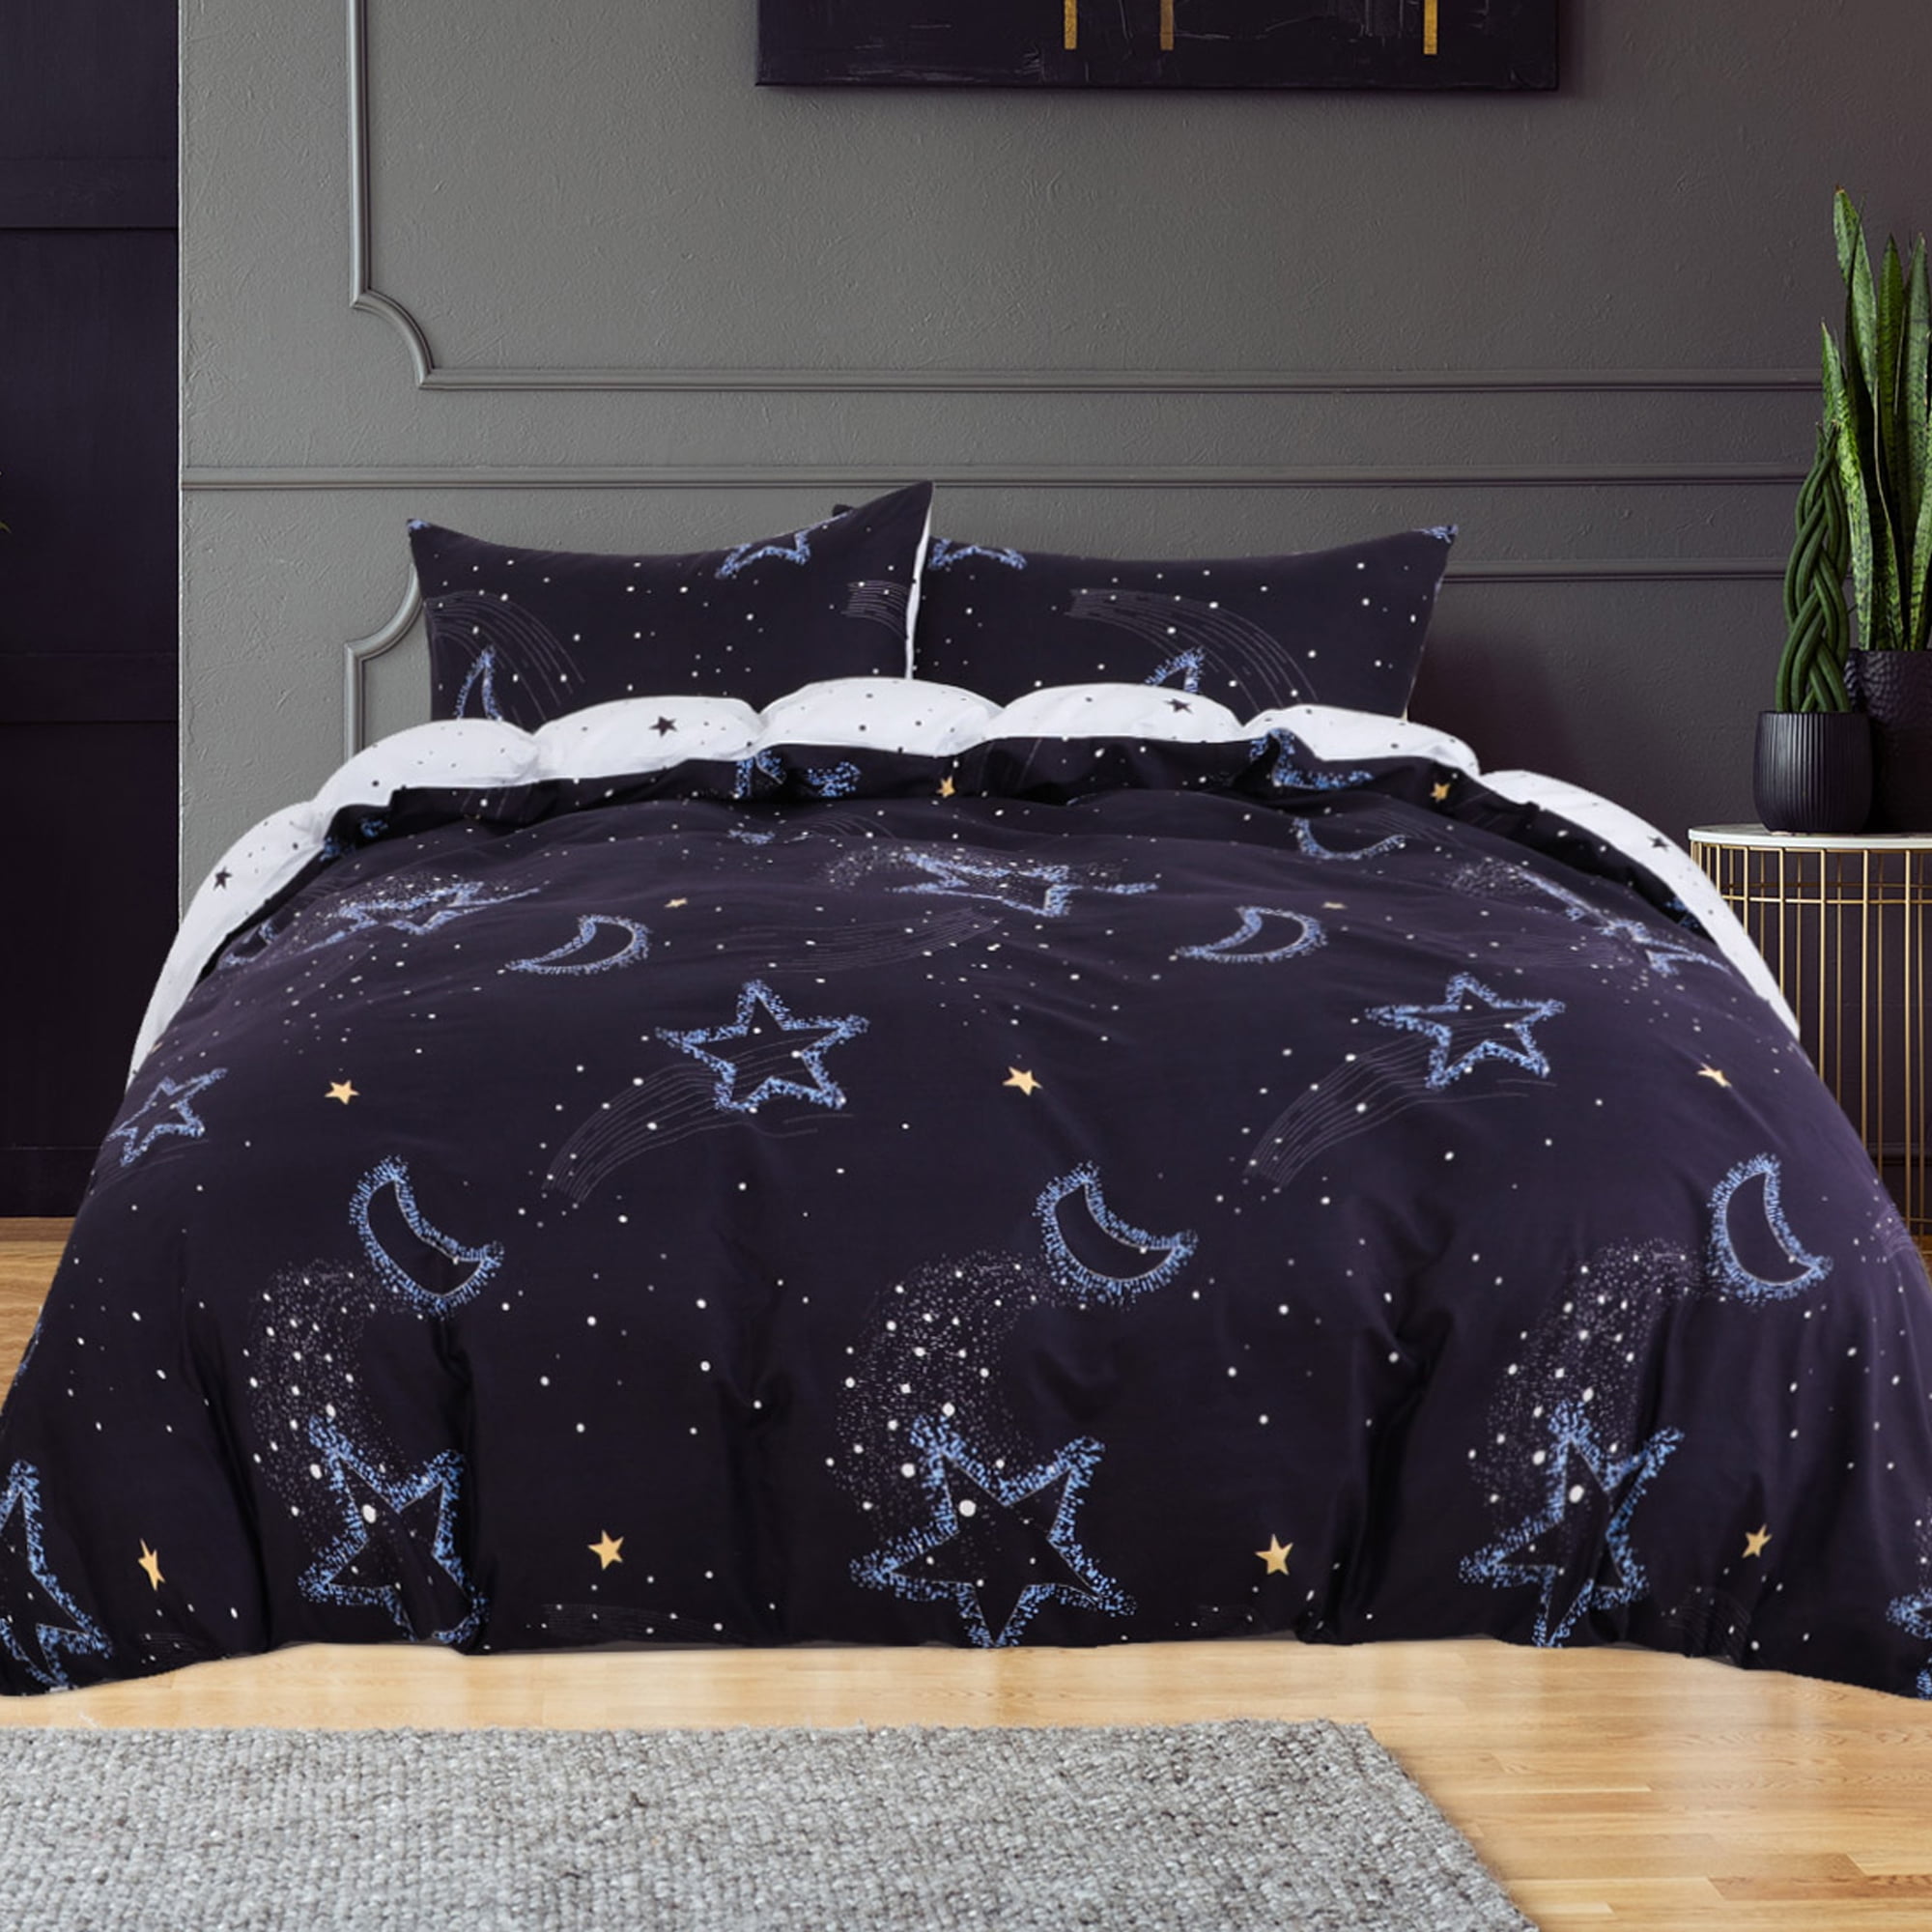 Details about   Yoda Baby Summer Comforter Set 3PCS Lightweight Soft Duvet Quilt Pillowcases New 